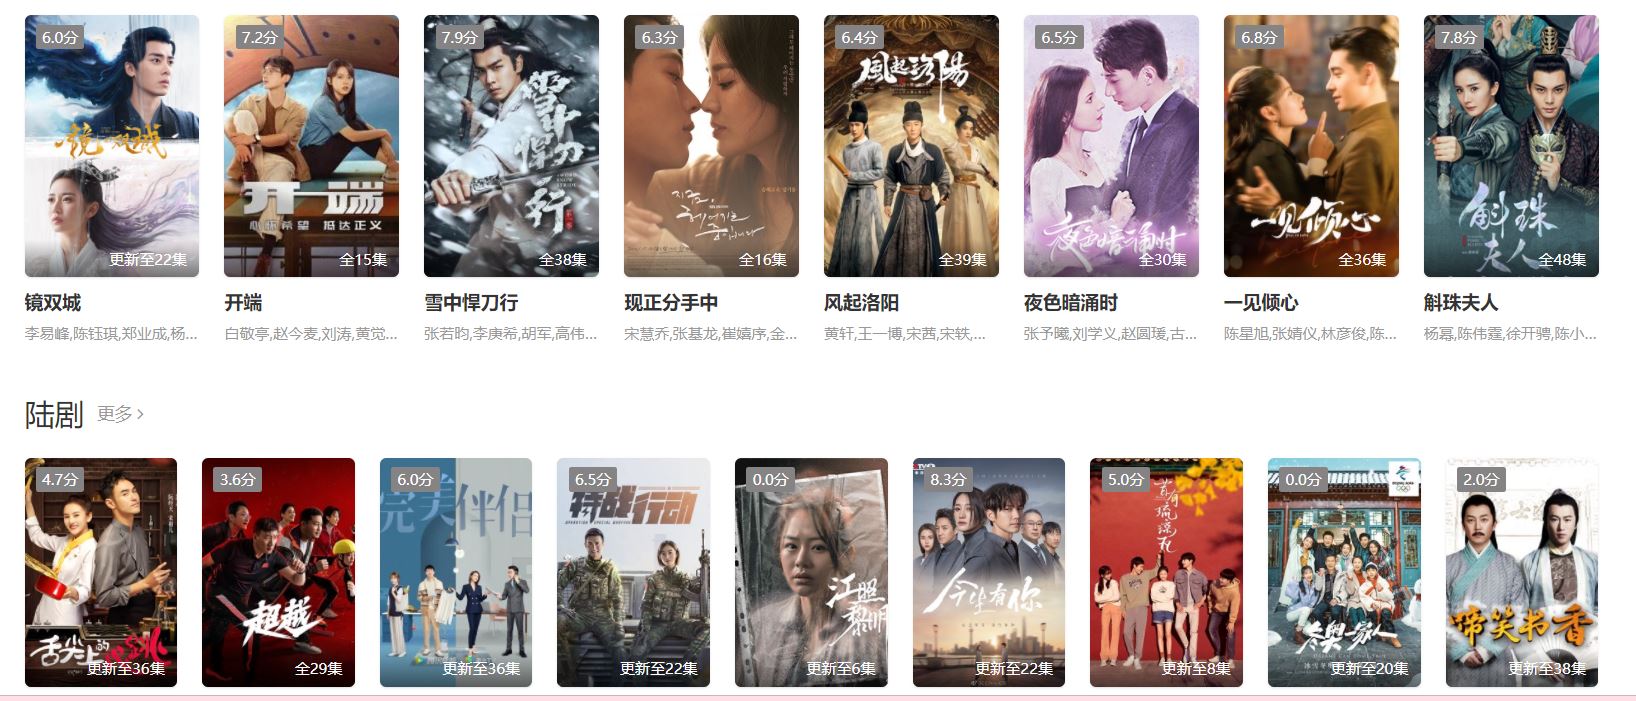 Duboku- Stream Movies And TV Shows From Korea, China, Hong Kong, Taiwan, And Many More Countries